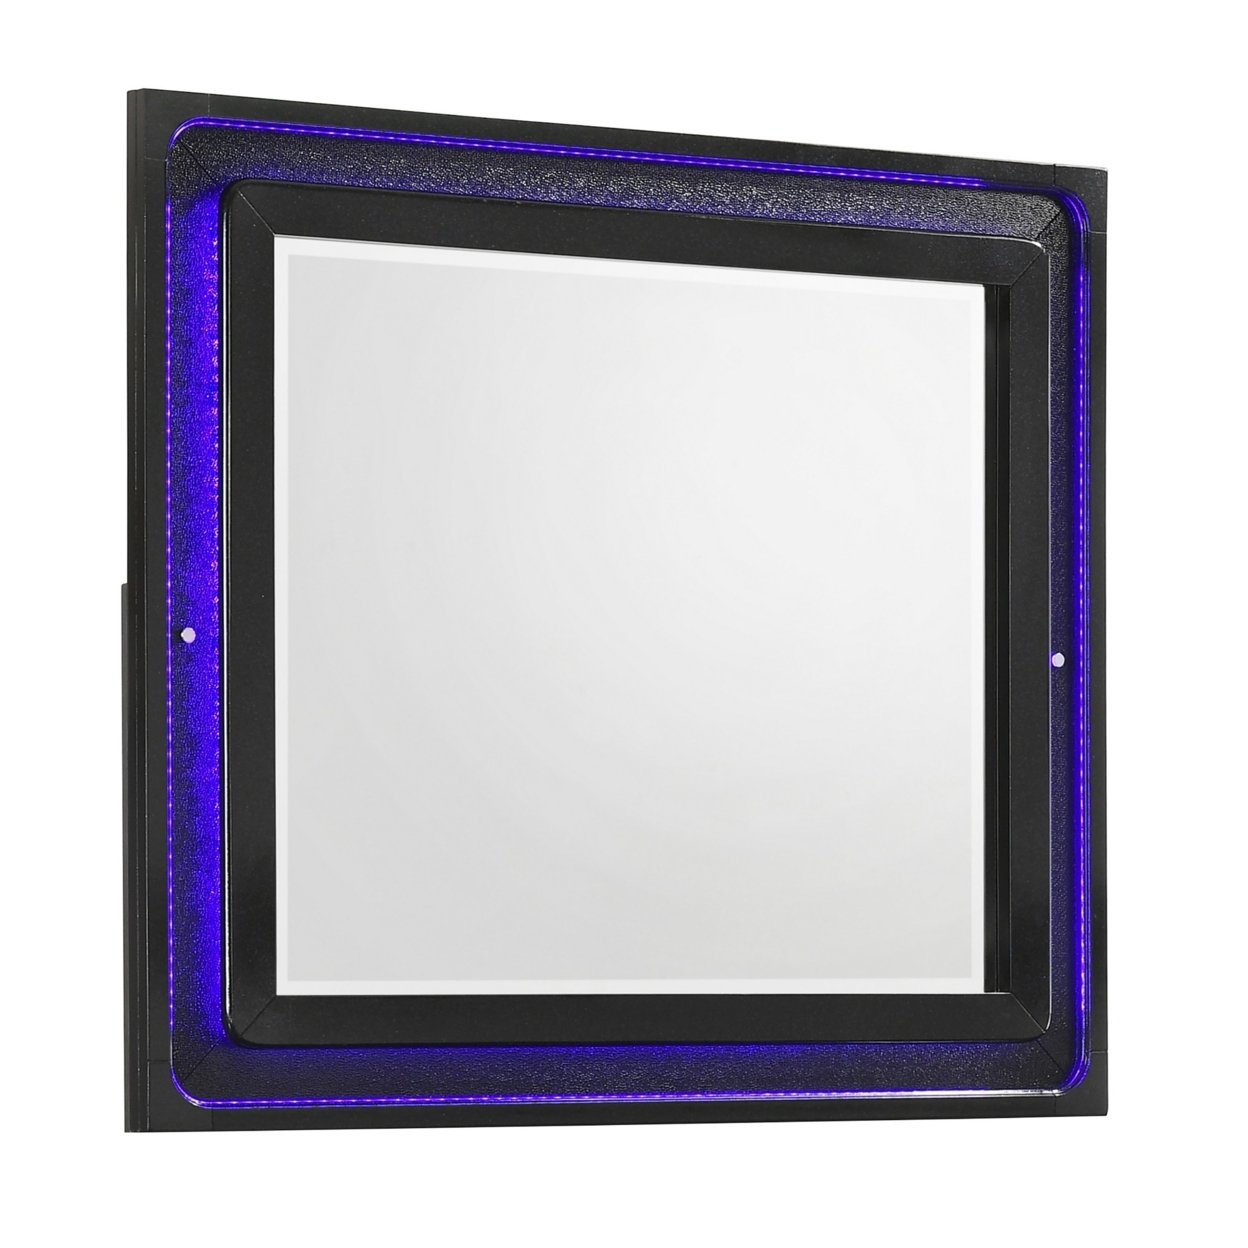 Vini 44 Inch Modern Mirror, Rectangular Wood Frame, Built In LED, Black